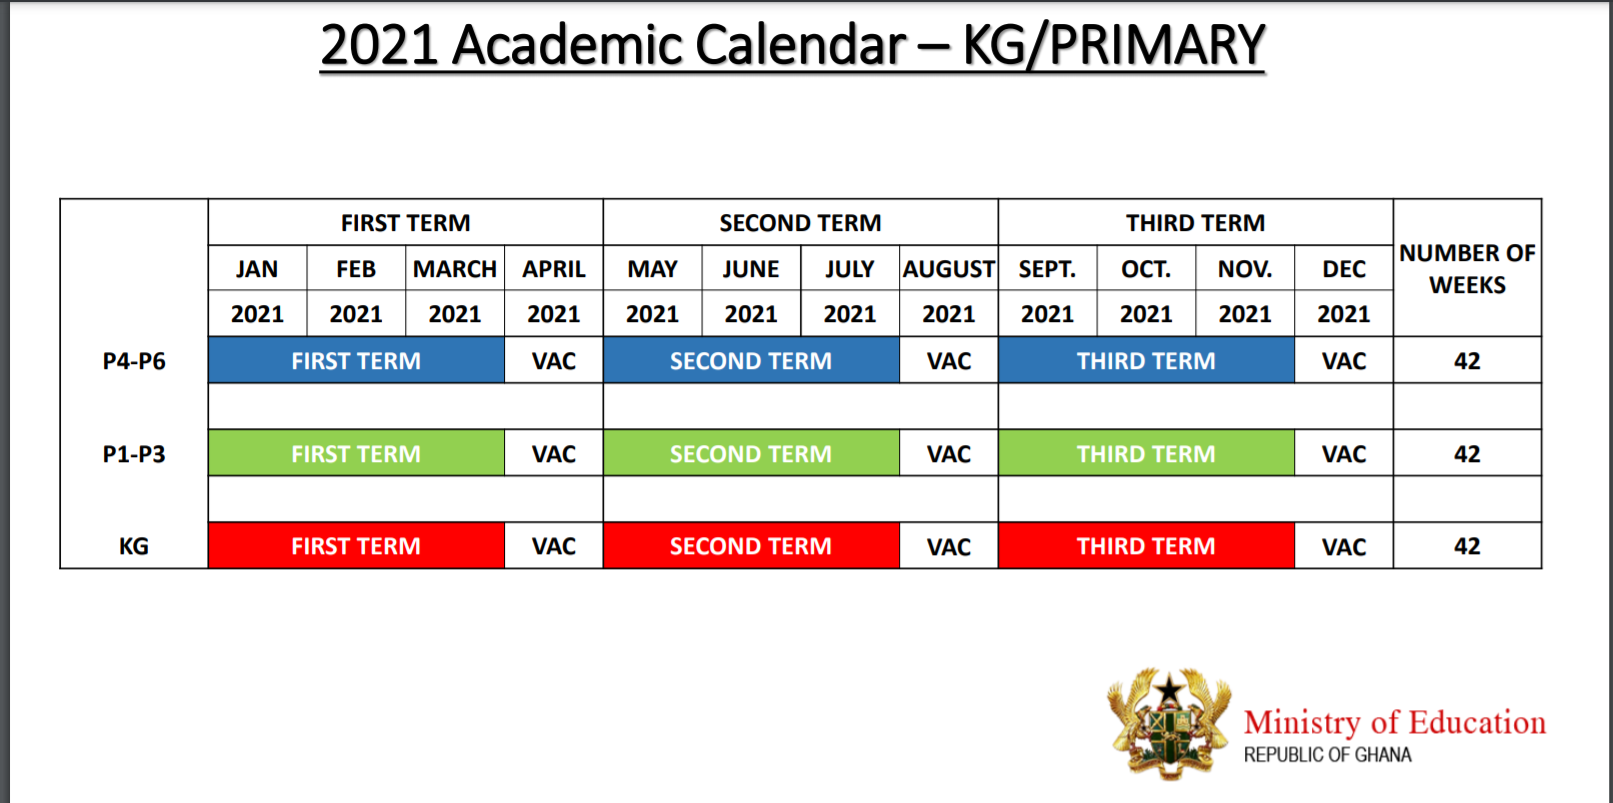 Full details of 2020/21 academic calendar for Kindergarten Primary